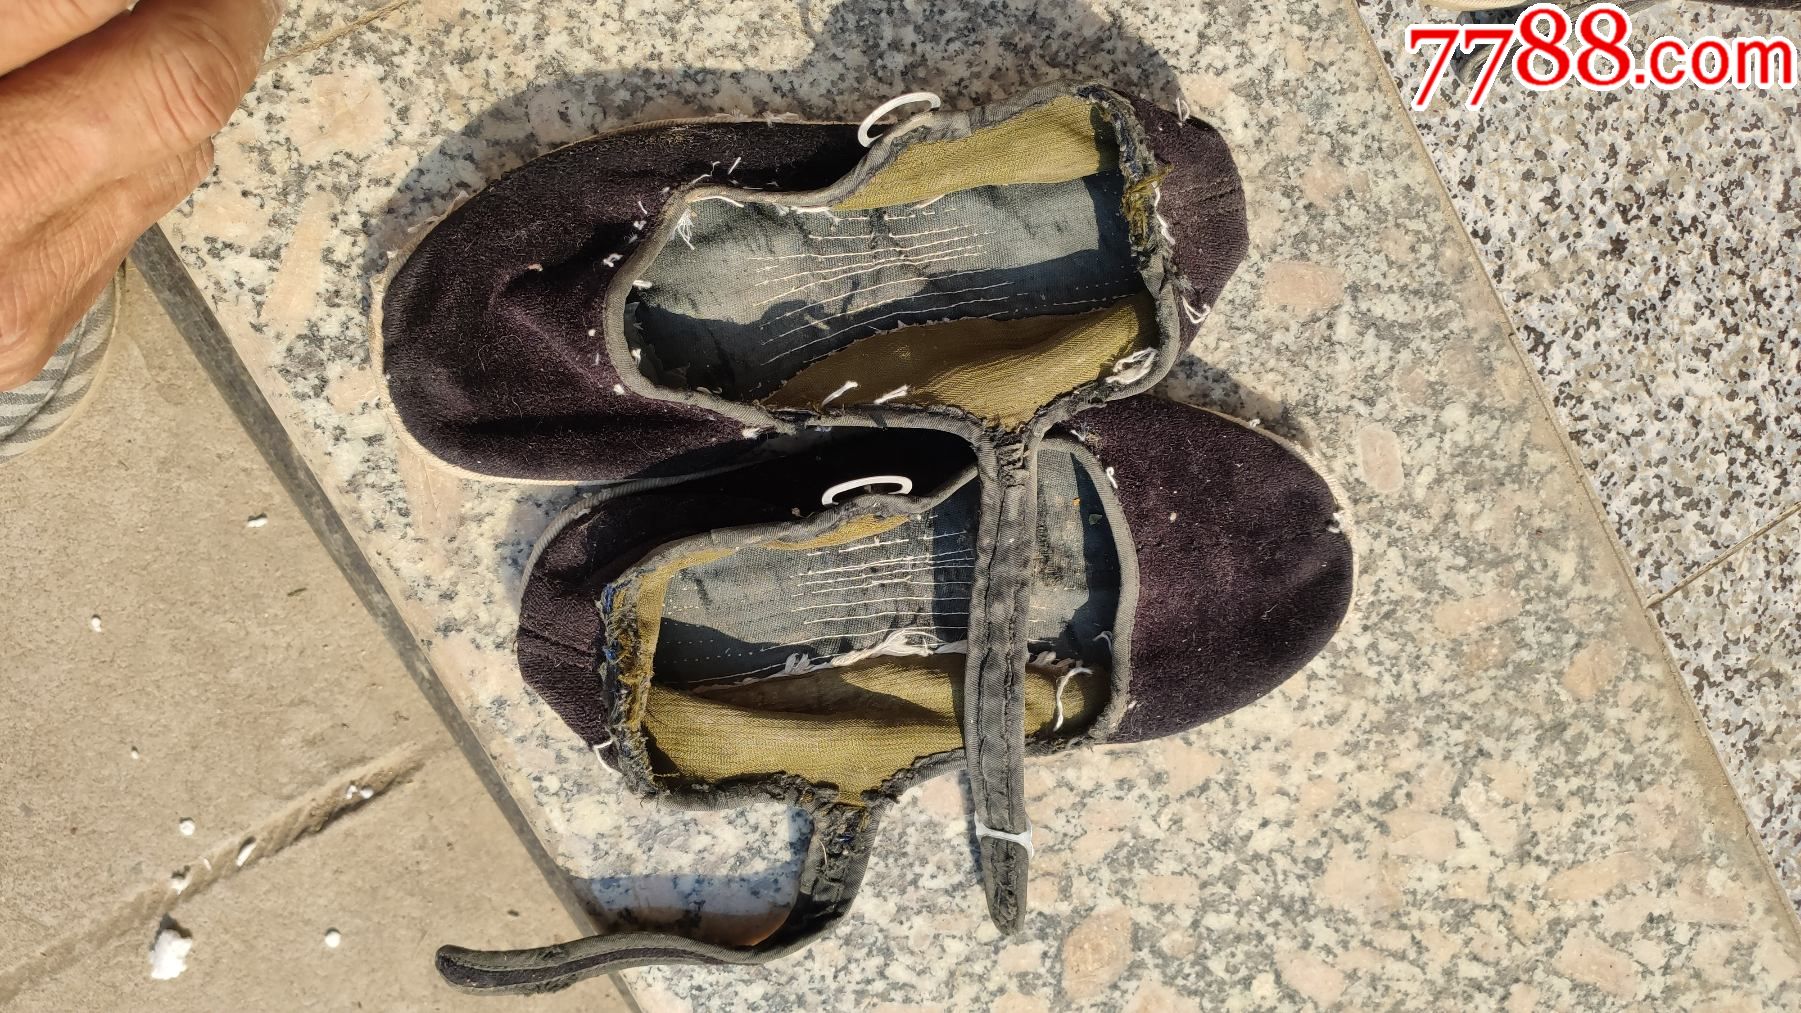 旧鞋收藏女士一带旧布鞋黑色绒面塑料底225码上海长征制鞋厂双鸽牌